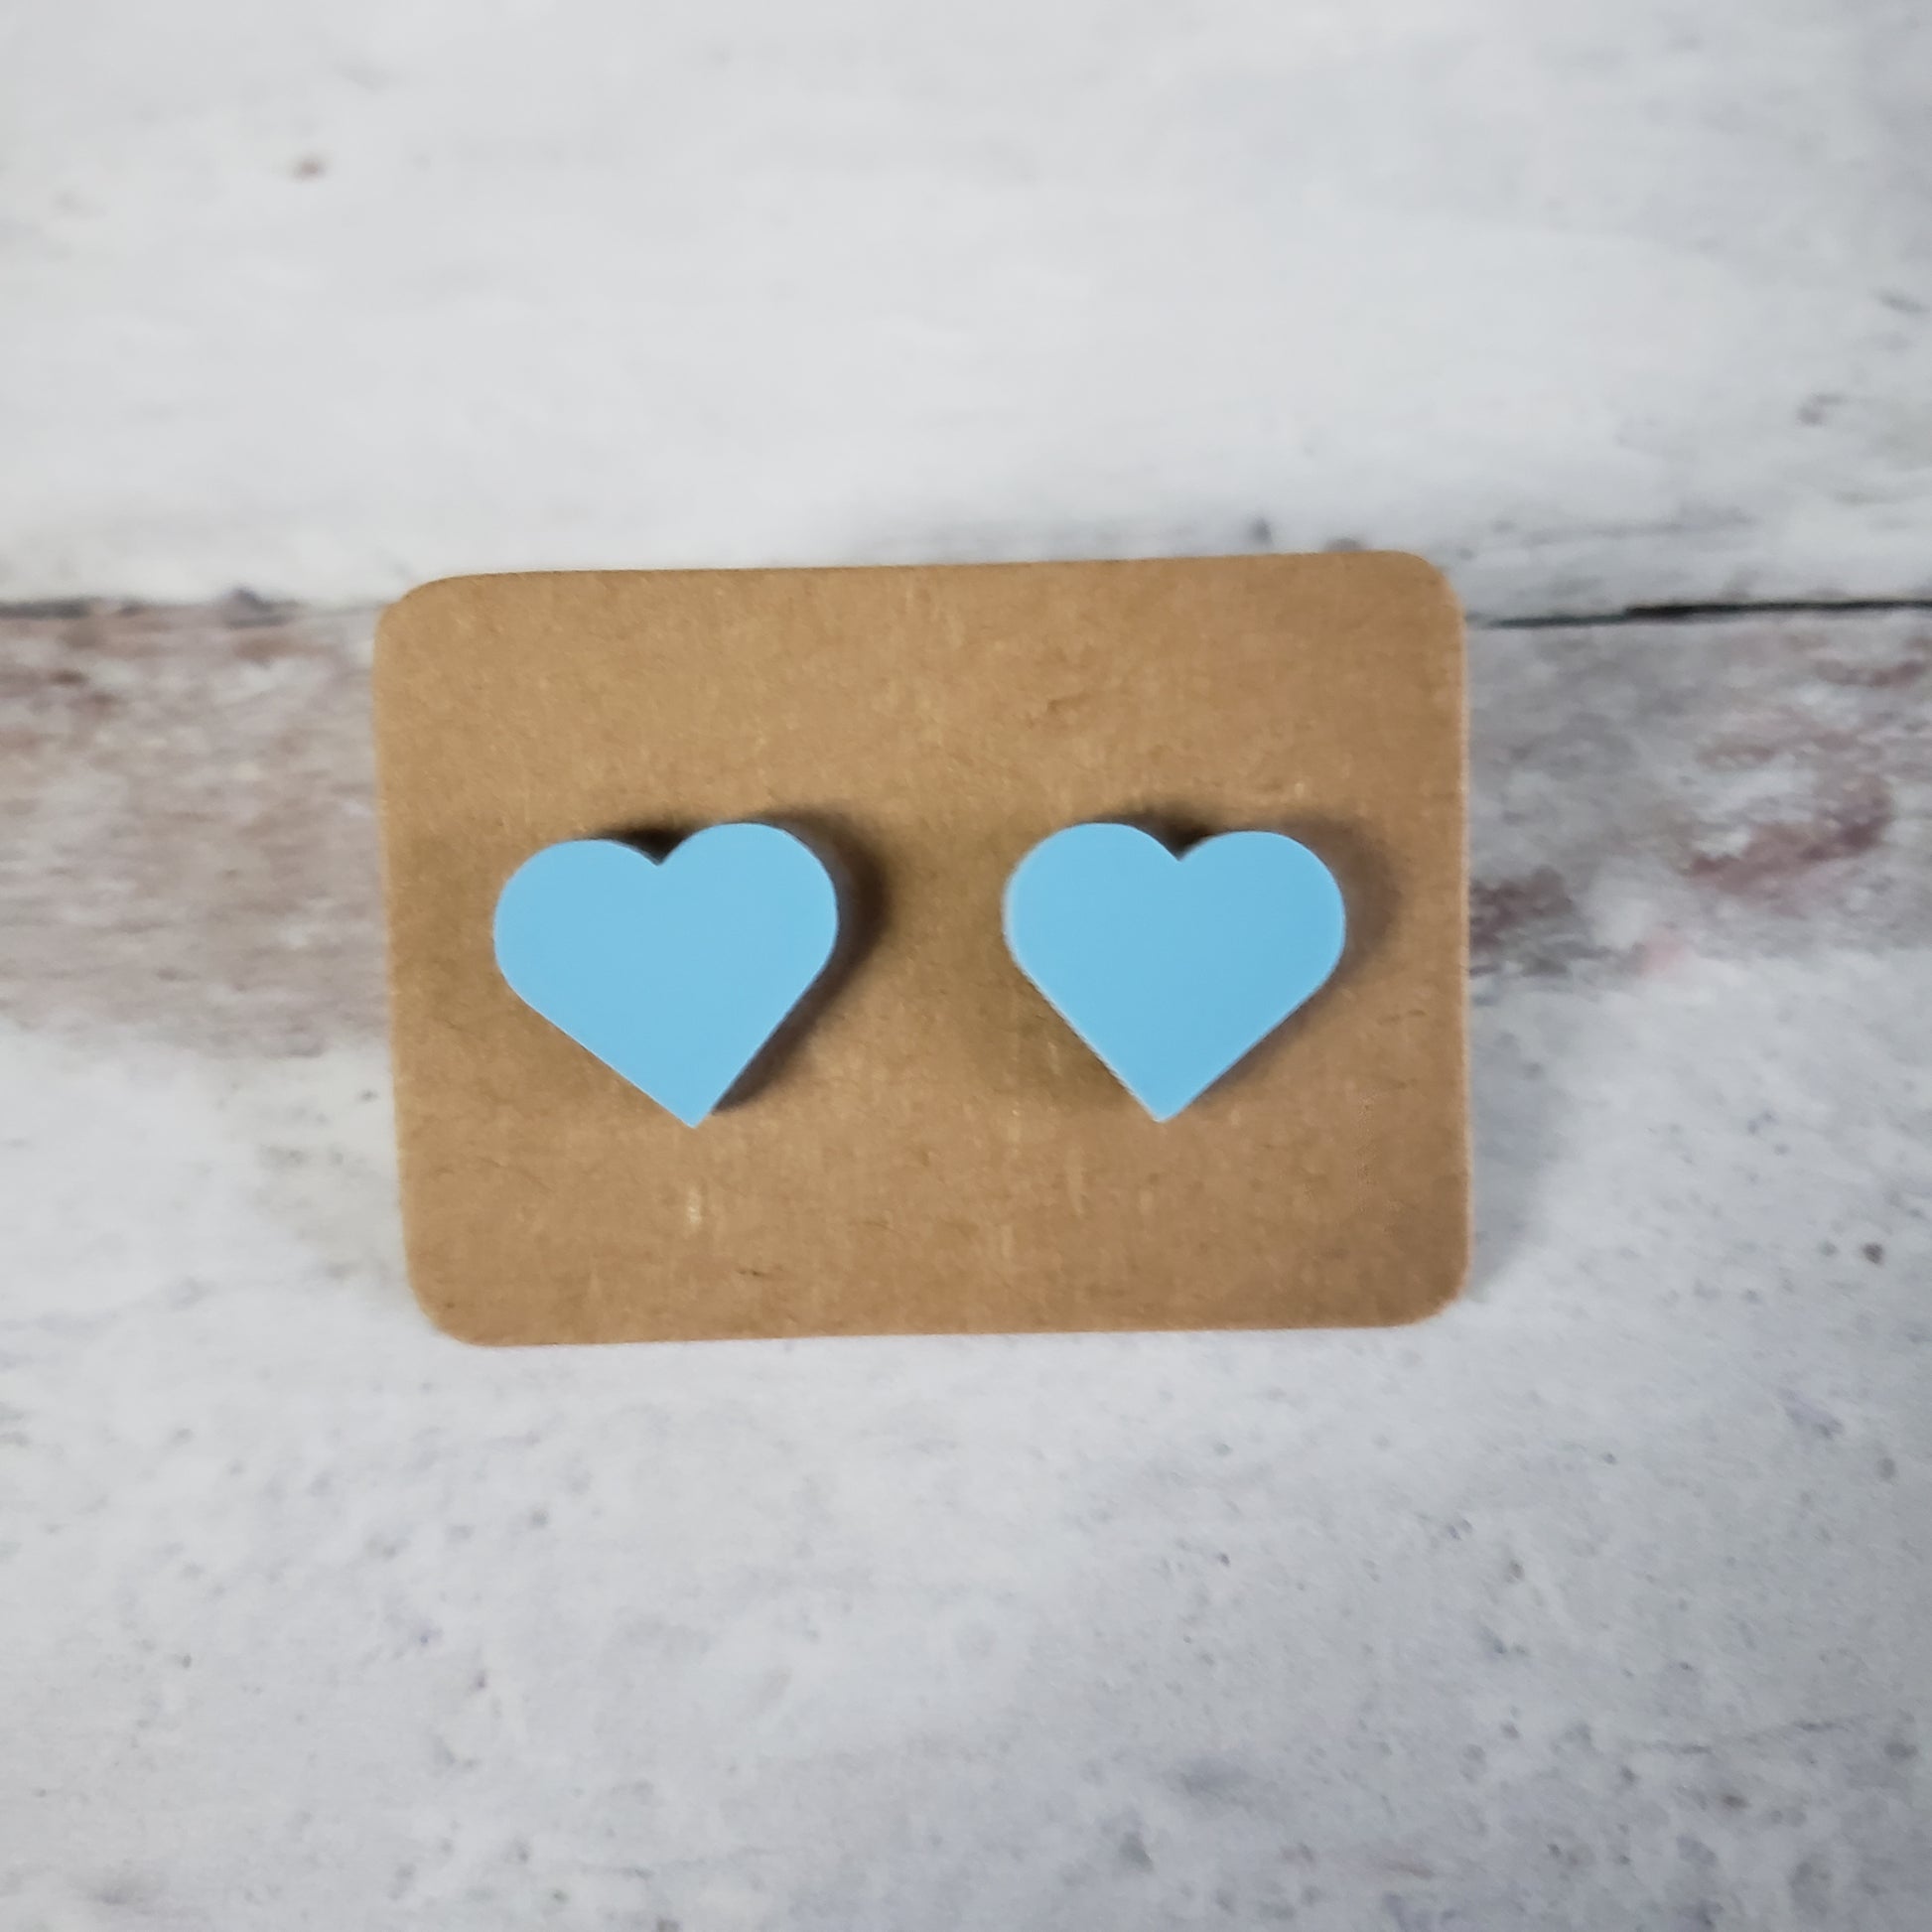 Matte pastel blue heart shaped stud earrings.